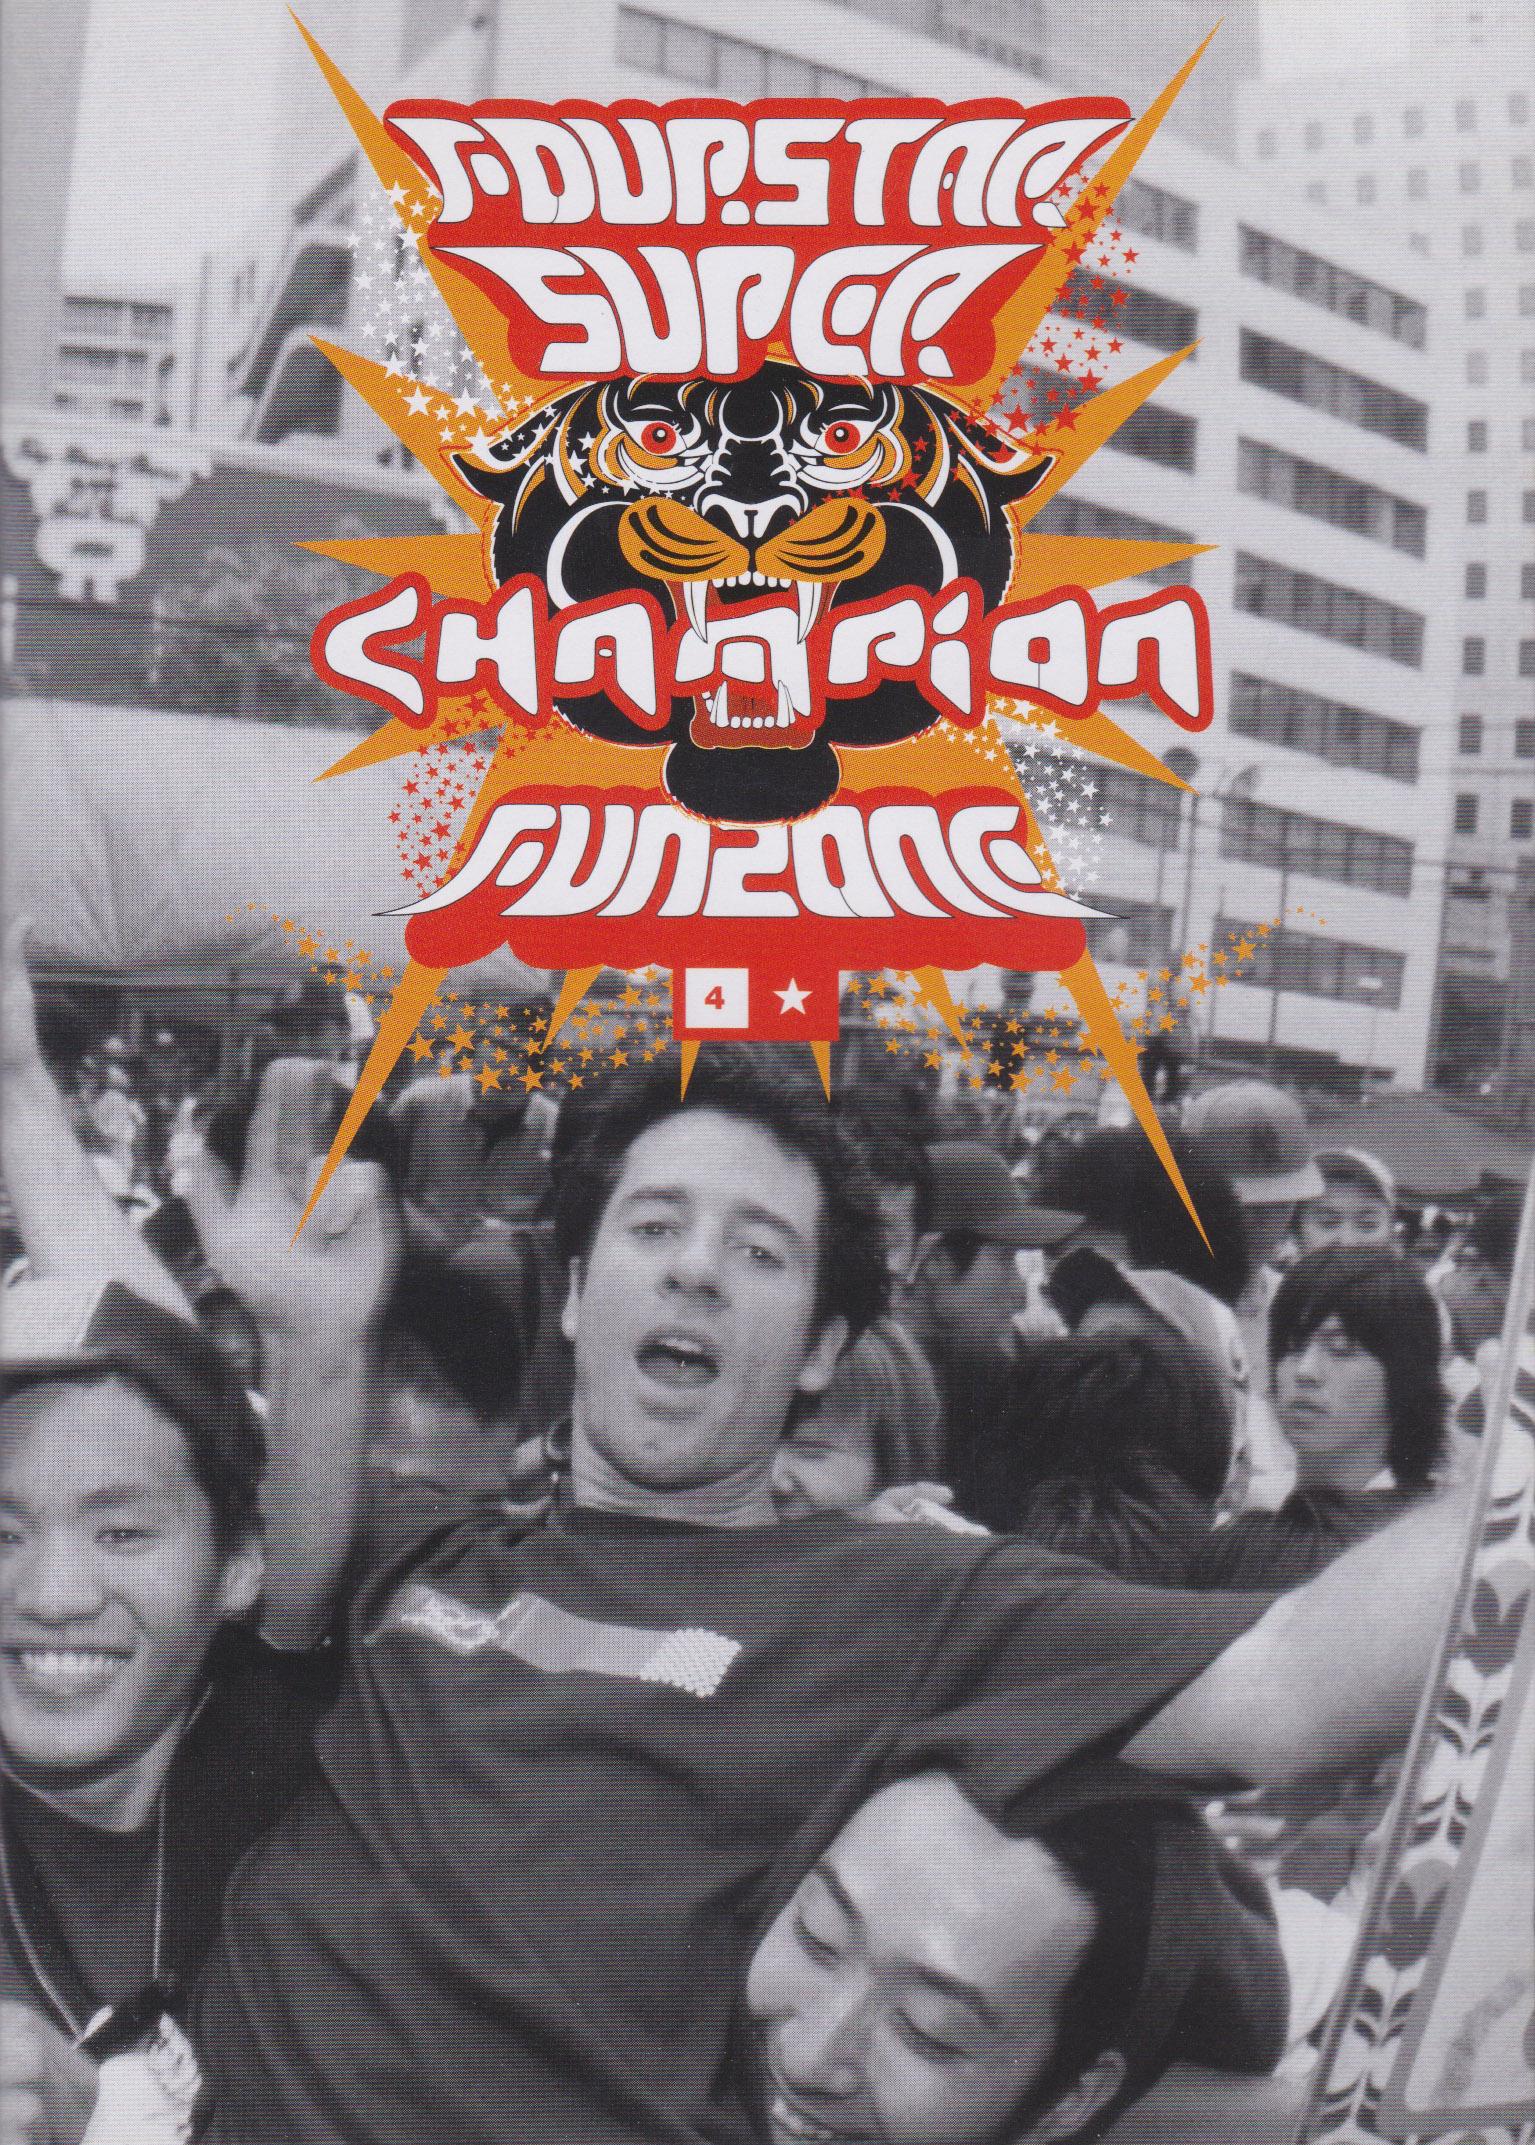 Fourstar - Super Champion Funzone cover